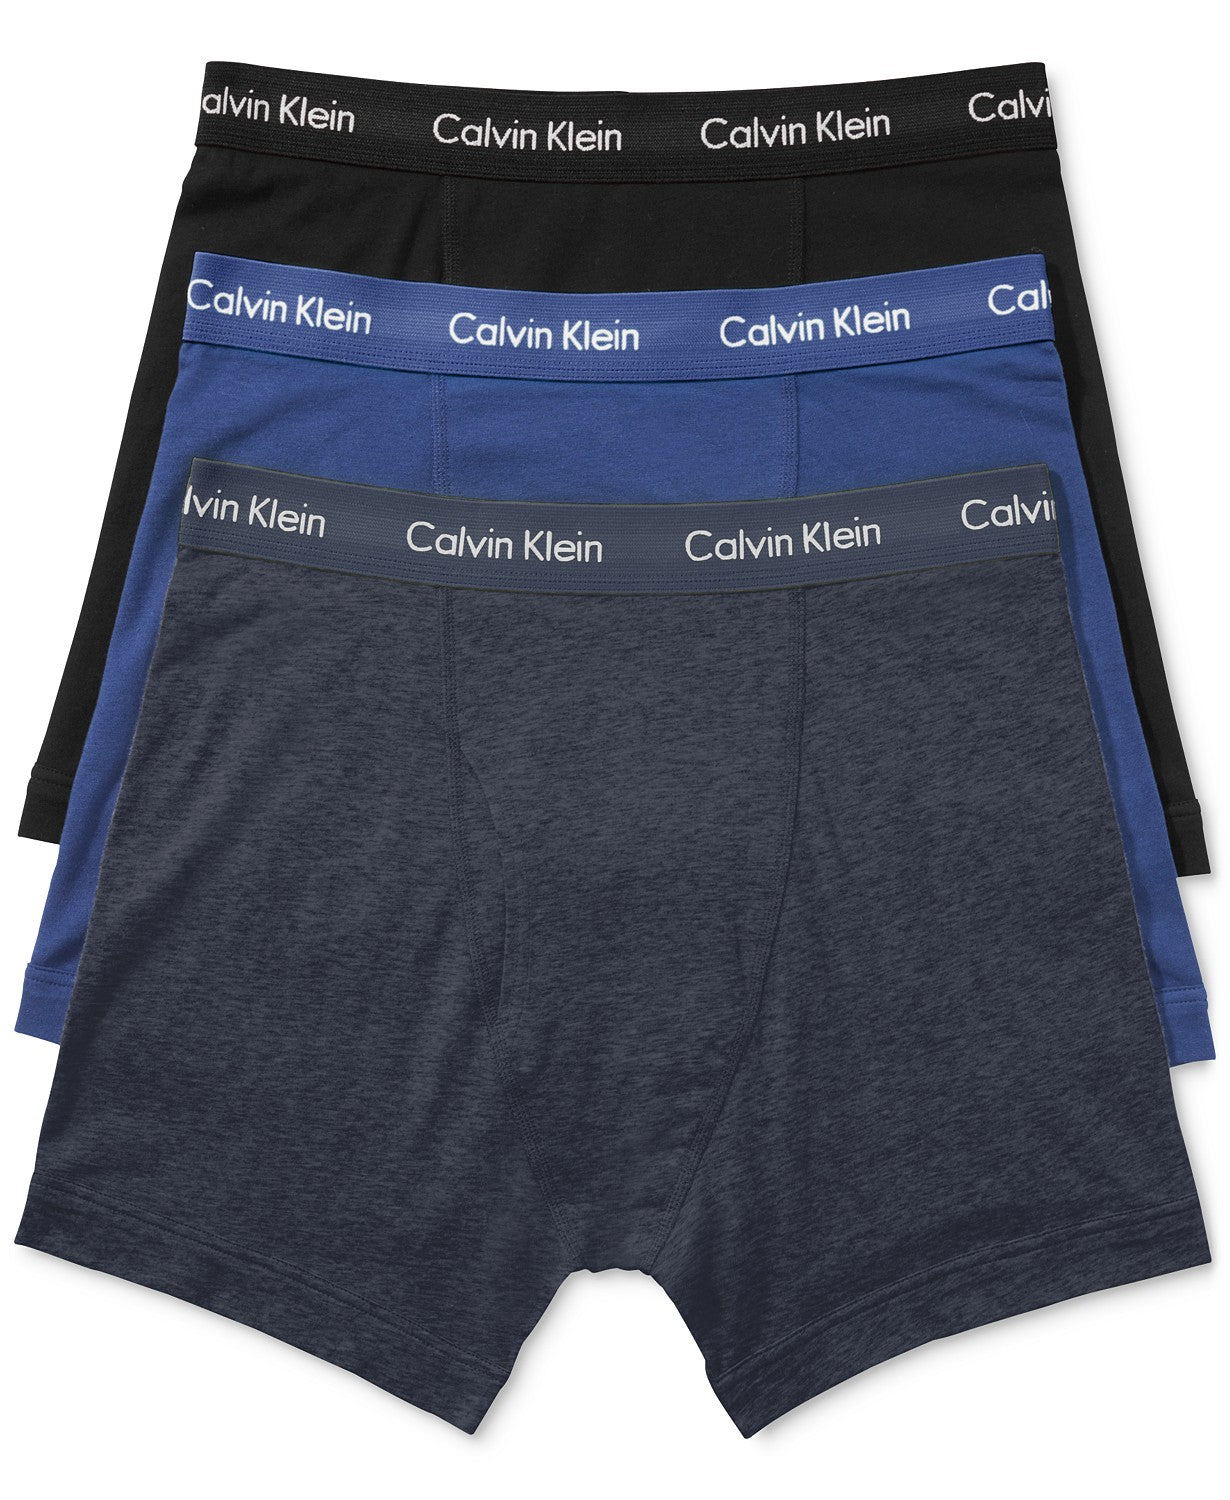 Calvin Klein Boys' Youth Boxer Briefs, 6-pack UNDERWEAR SHORT